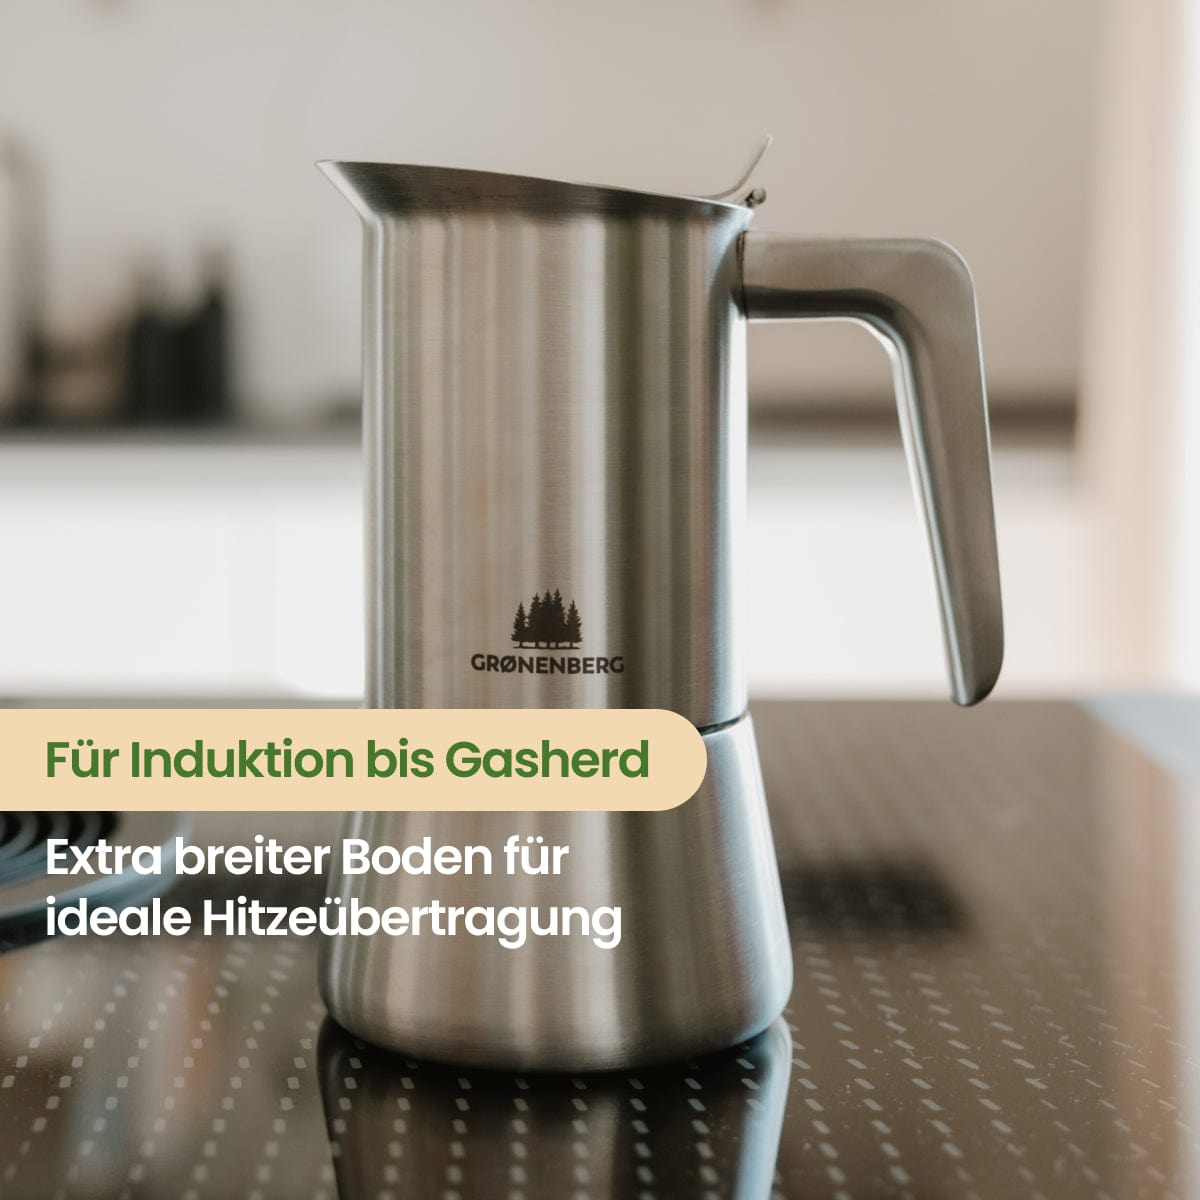 Edelstahl Espressokocher 6 Tassen (300 ml) | Induktion | Mit und ohne Motiv